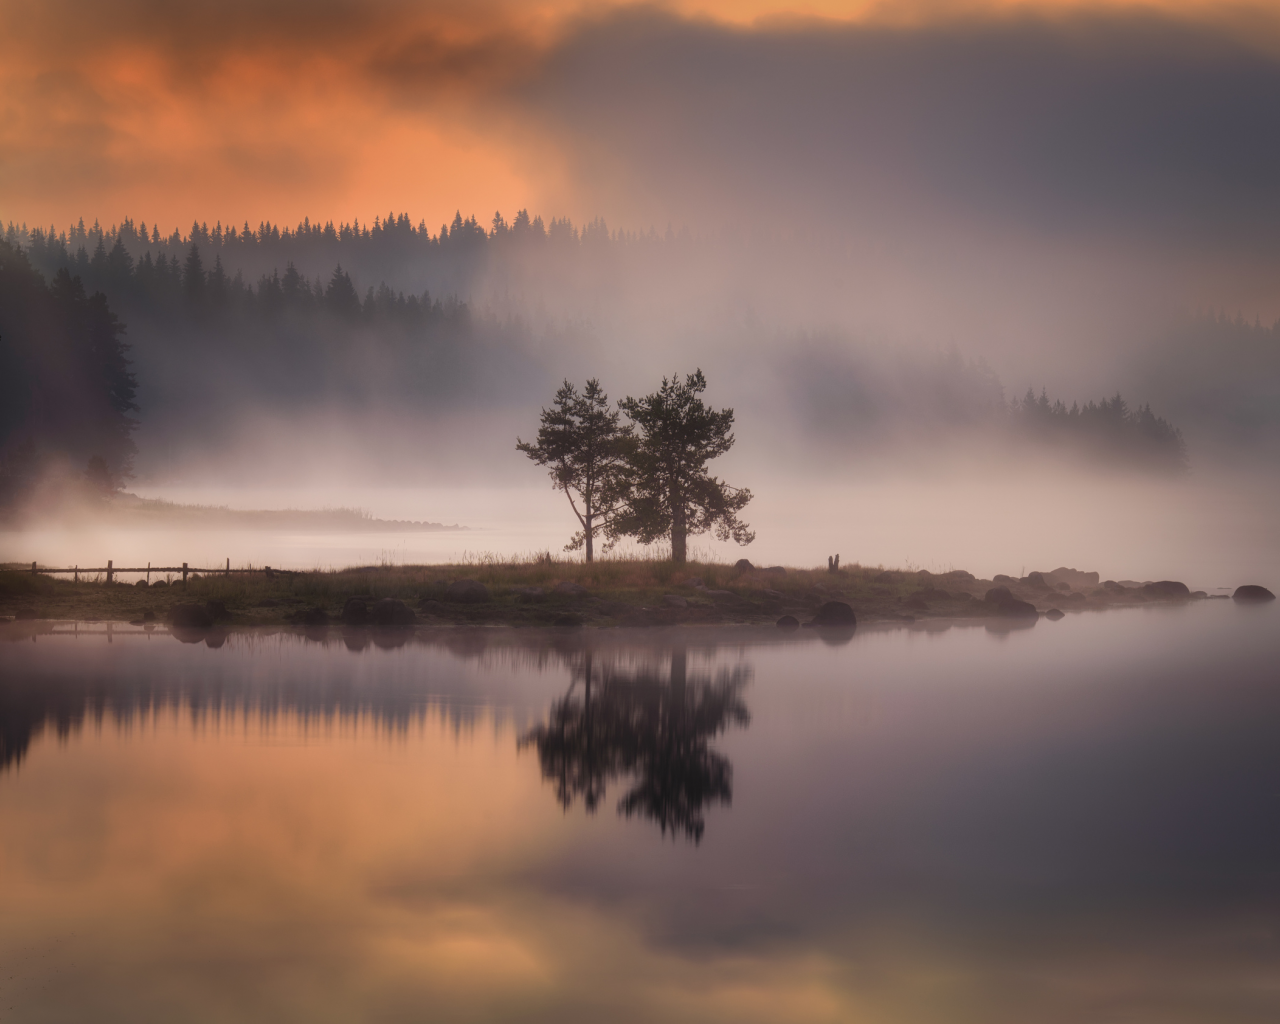 nature, fog, islet, tree, lake